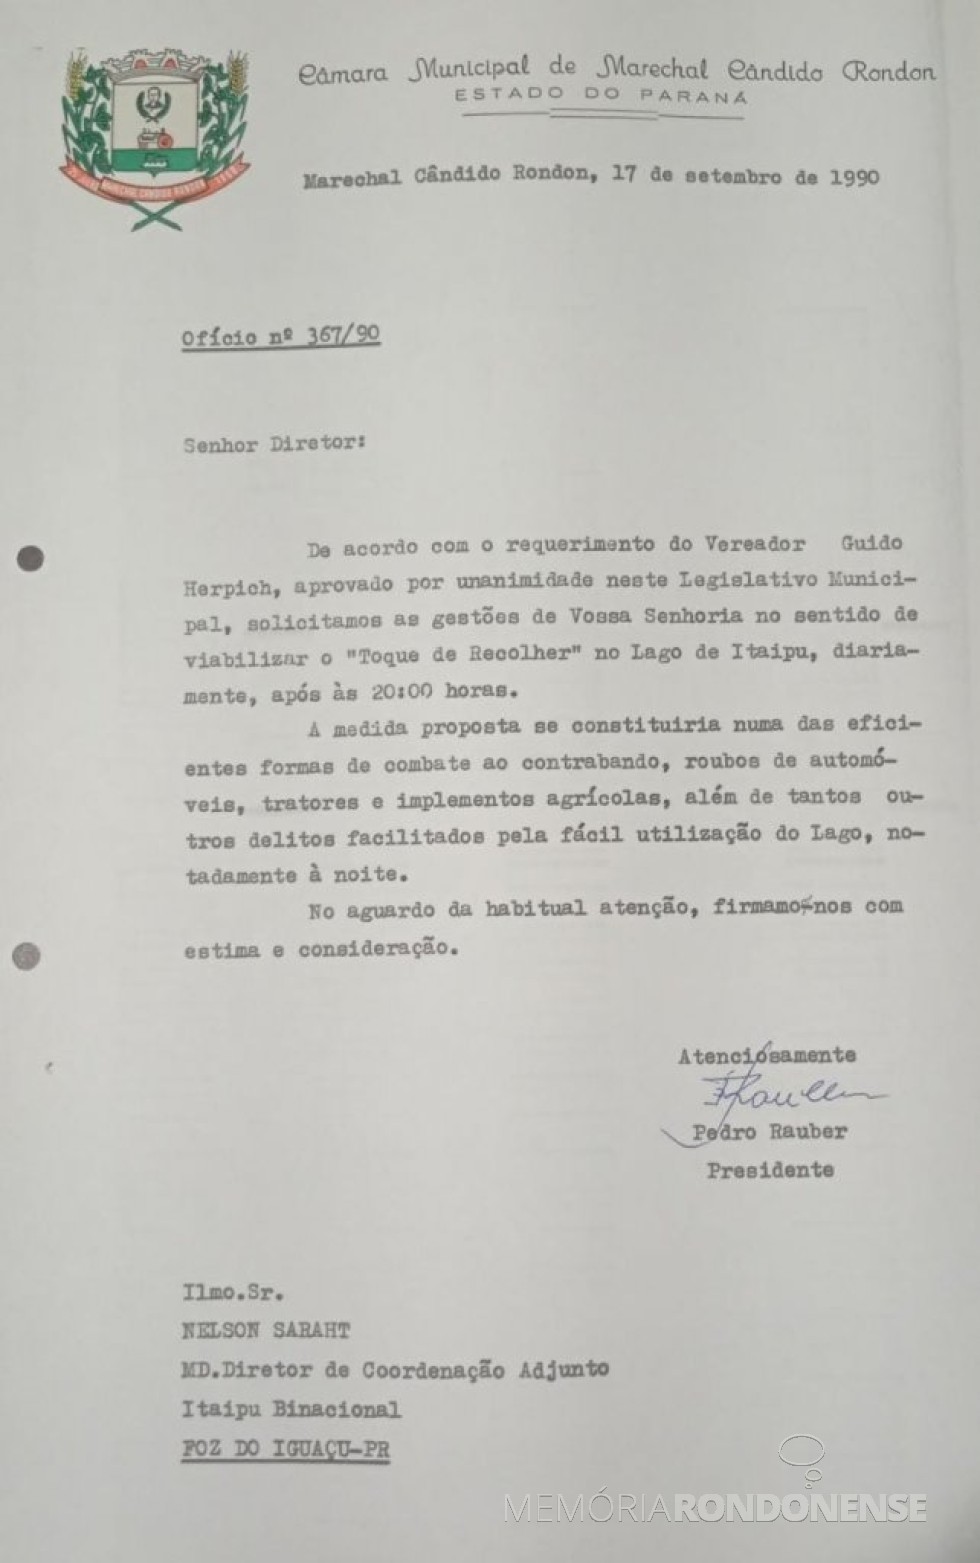 || Cópia do expediente encaminhado à Itaipu Binacional pela Câmara Municipal de Marechal Cândido Rondon em atenção ao Requerimento do vereador Guido Herpich, em setembro de 1990.
Imagem: Acervo do Legislativo referenciado - FOTO 5 - 
